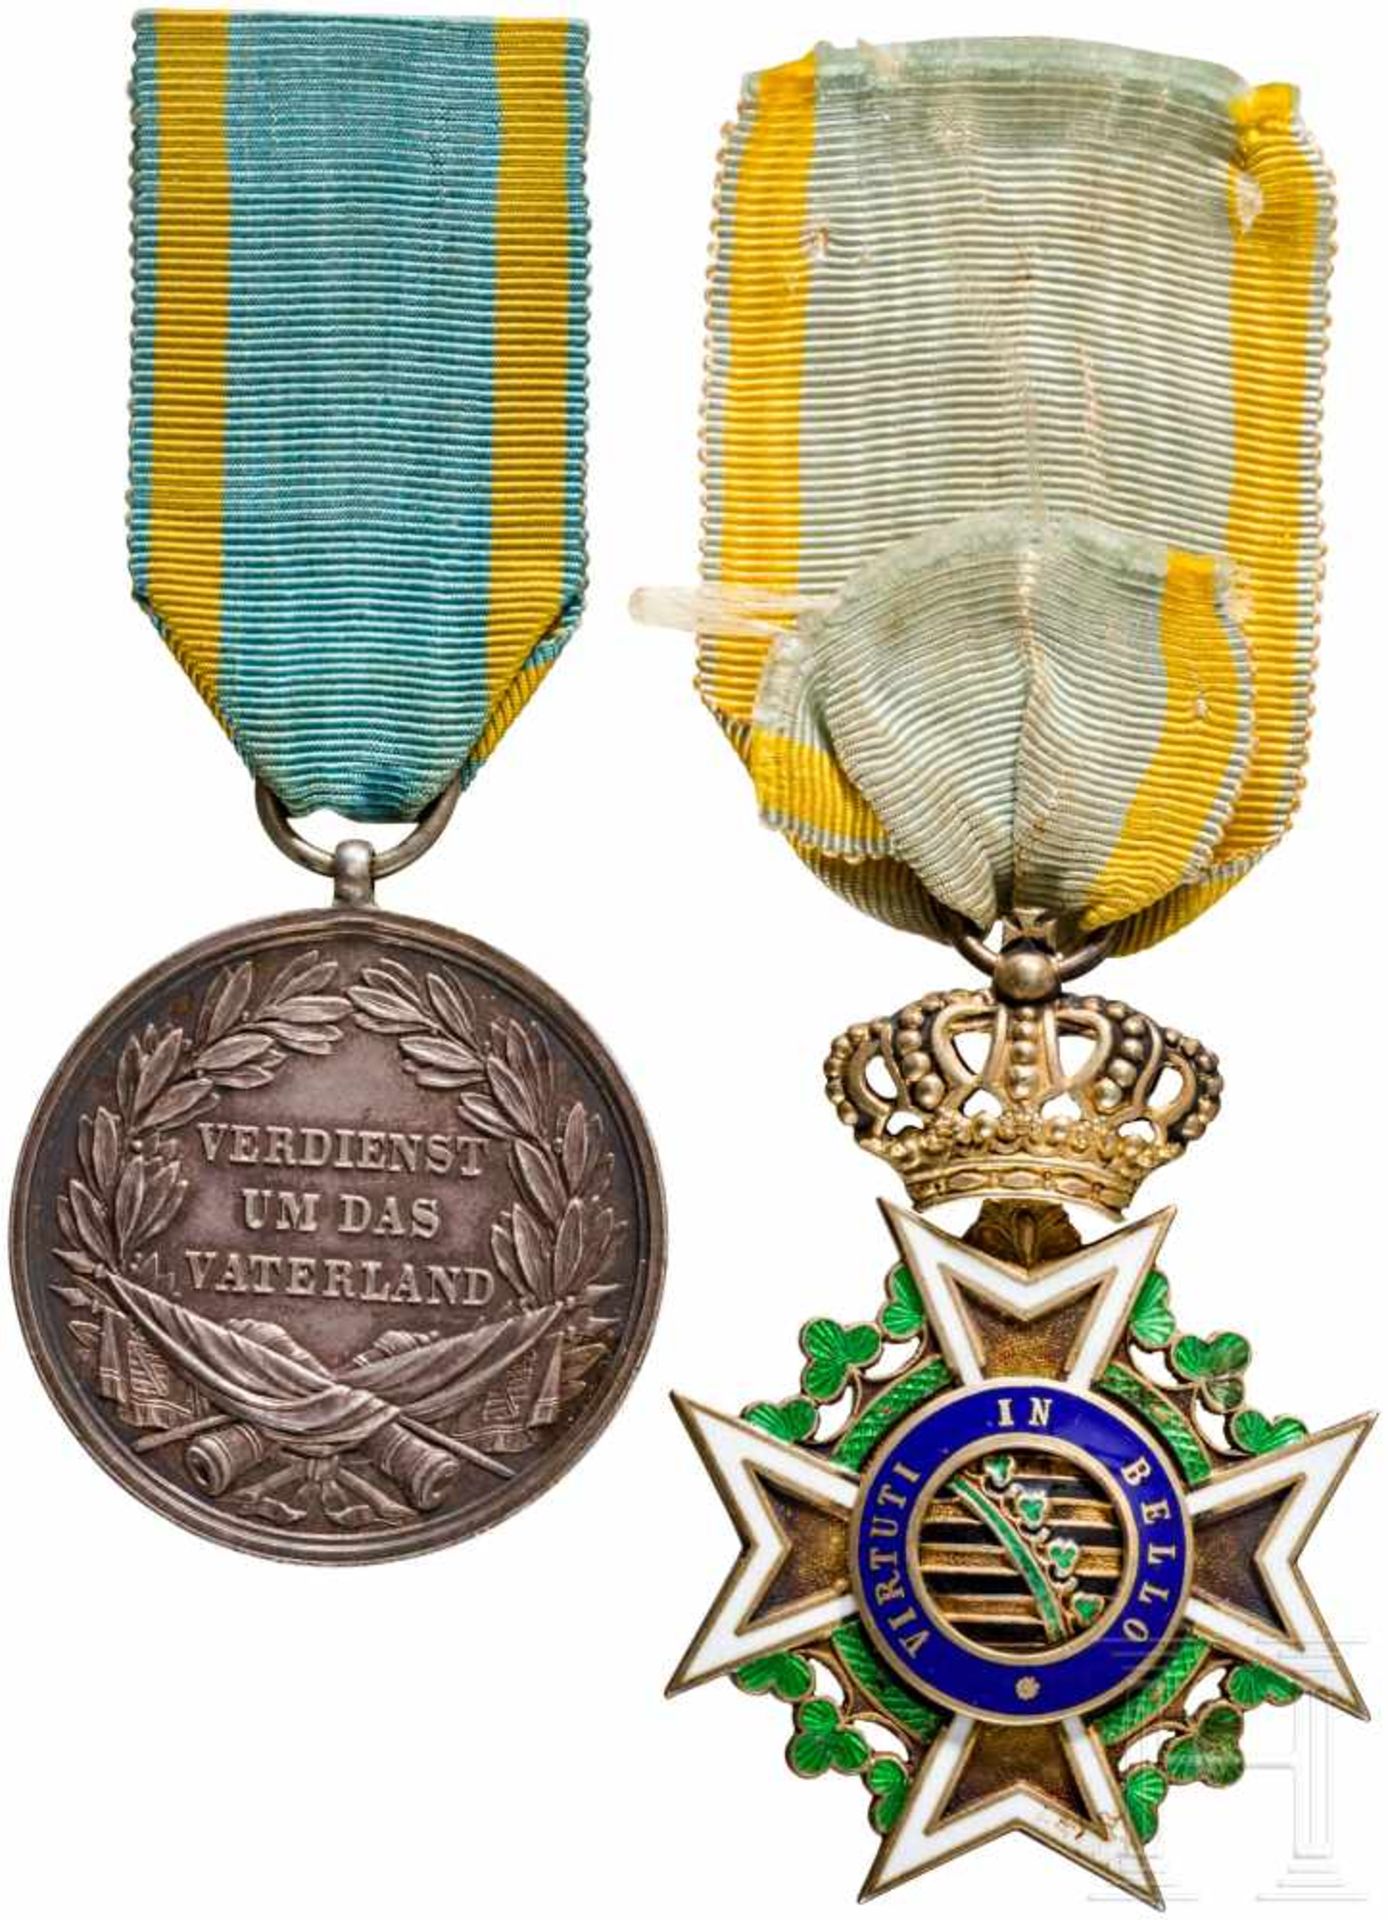 Königlicher Militär St. Heinrichs-Orden – RitterkreuzSilber vergoldet und emailliert, Maße ca. 54 - Bild 2 aus 2